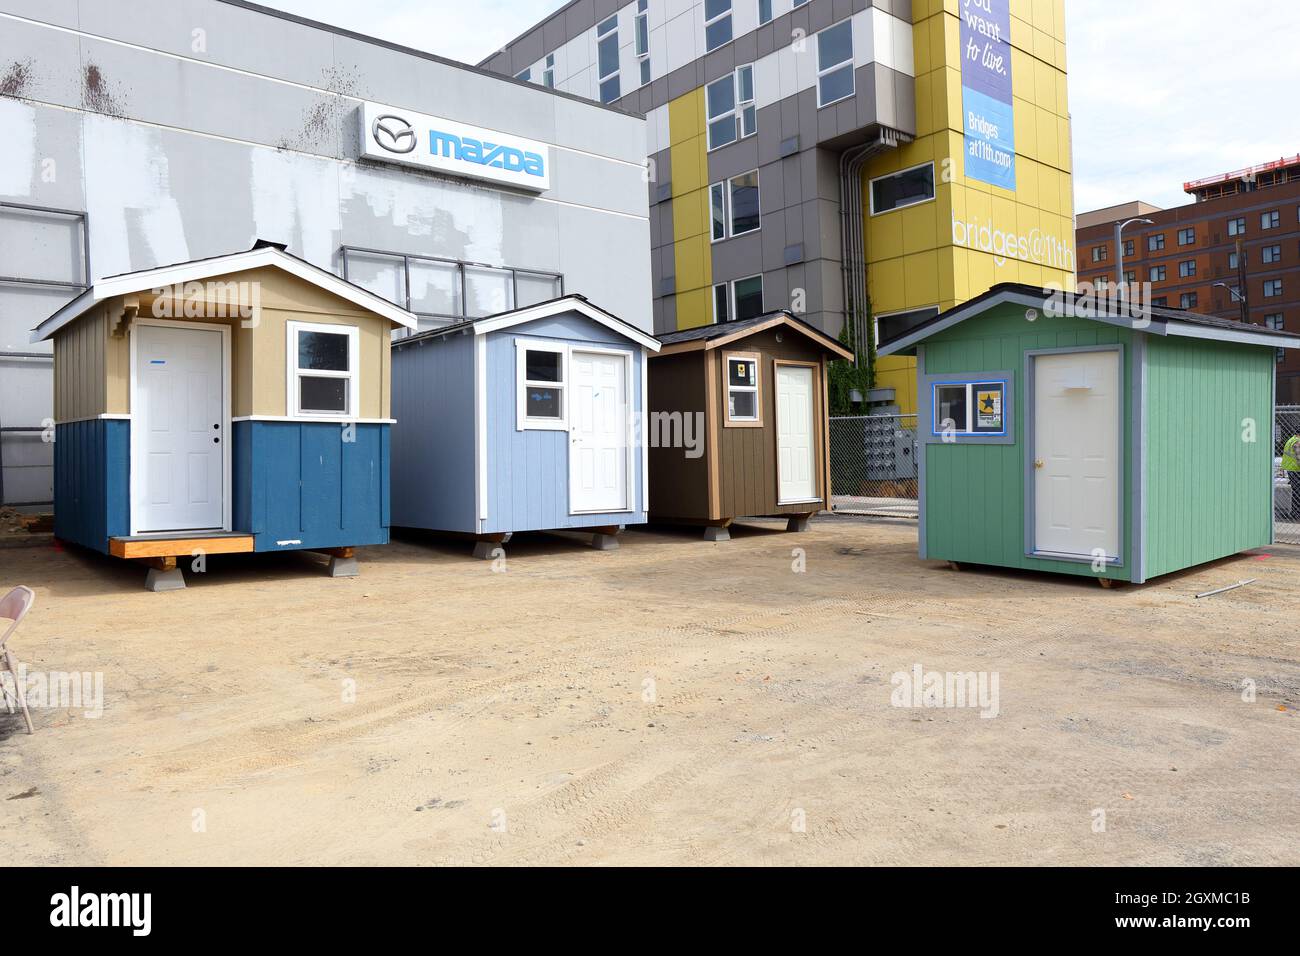 Rosie's Tiny House Village refugios temporales para personas sin hogar en construcción en el Distrito U, Seattle, WA. [consulte la información adicional para ver la leyenda completa] Foto de stock